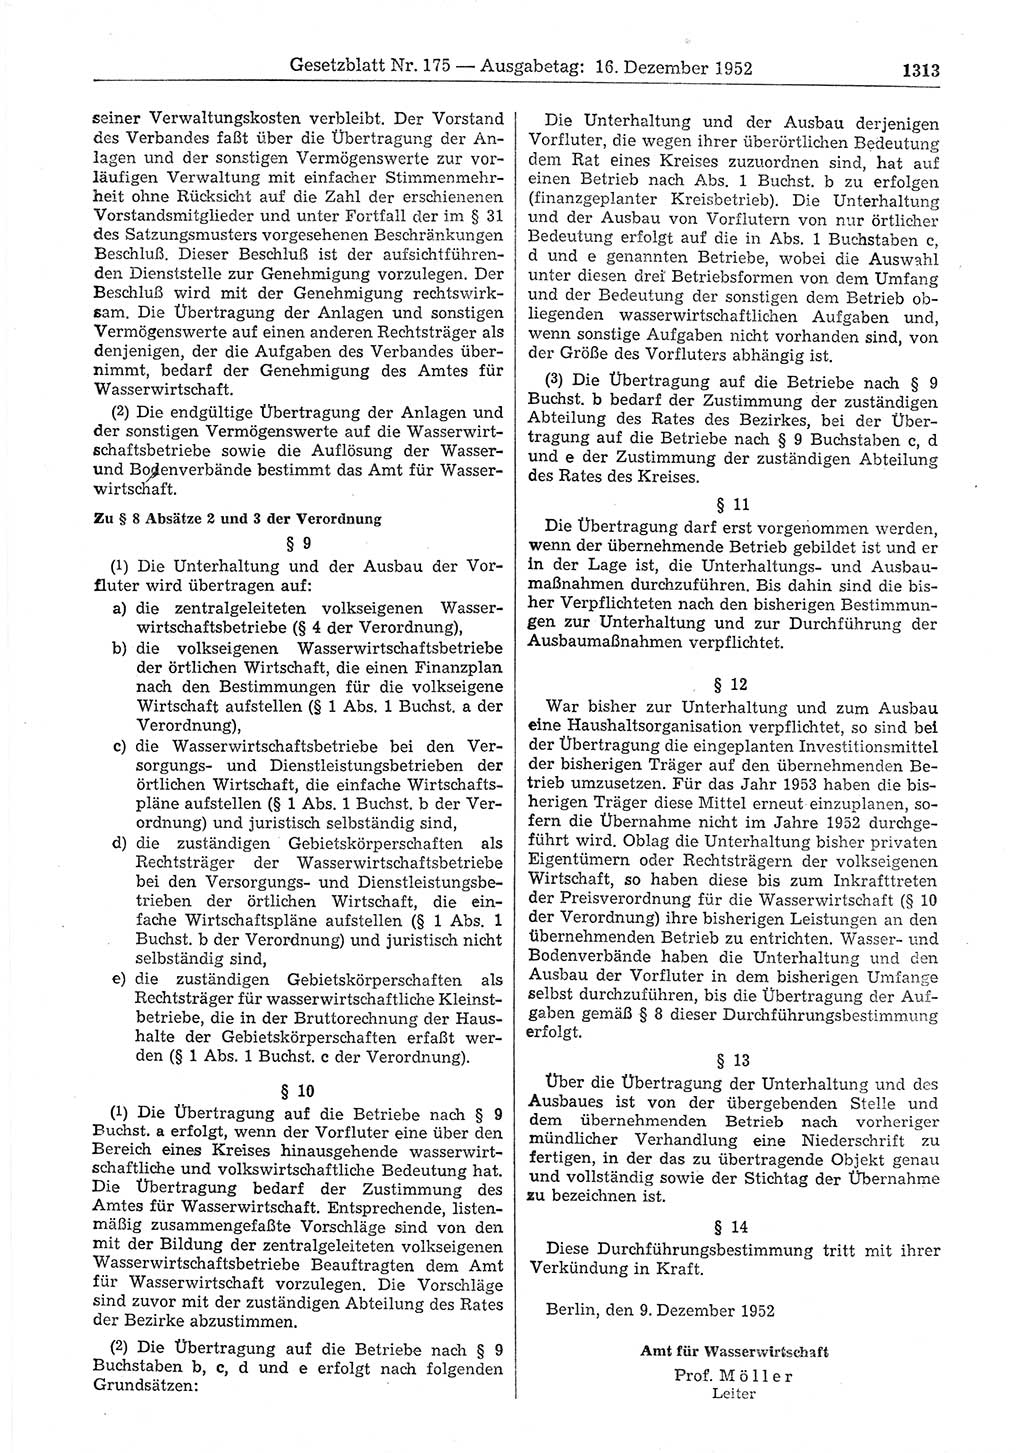 Gesetzblatt (GBl.) der Deutschen Demokratischen Republik (DDR) 1952, Seite 1313 (GBl. DDR 1952, S. 1313)